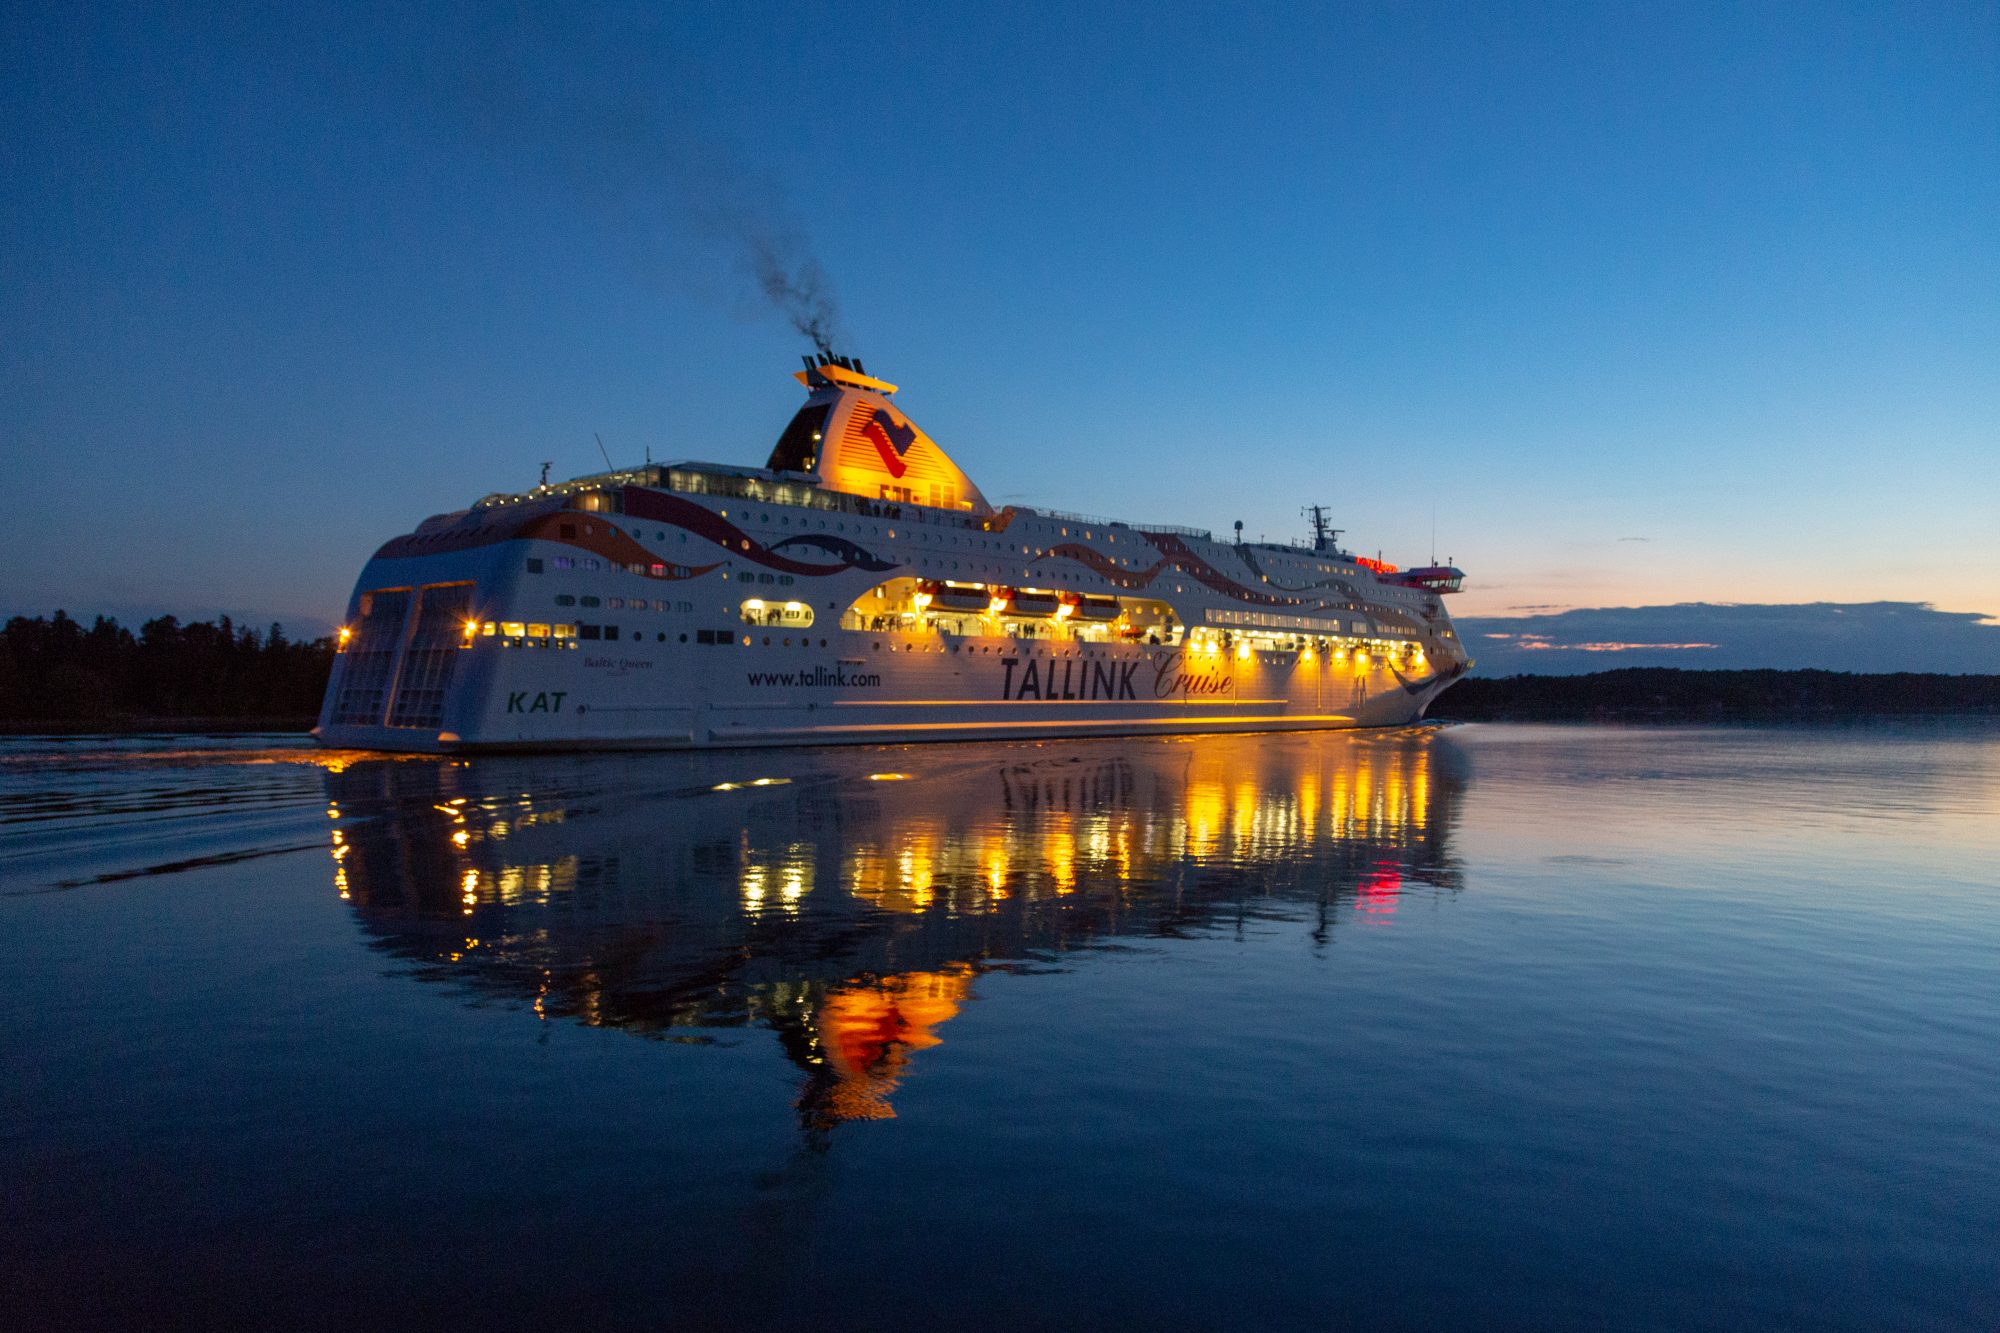 baltic queen cruise